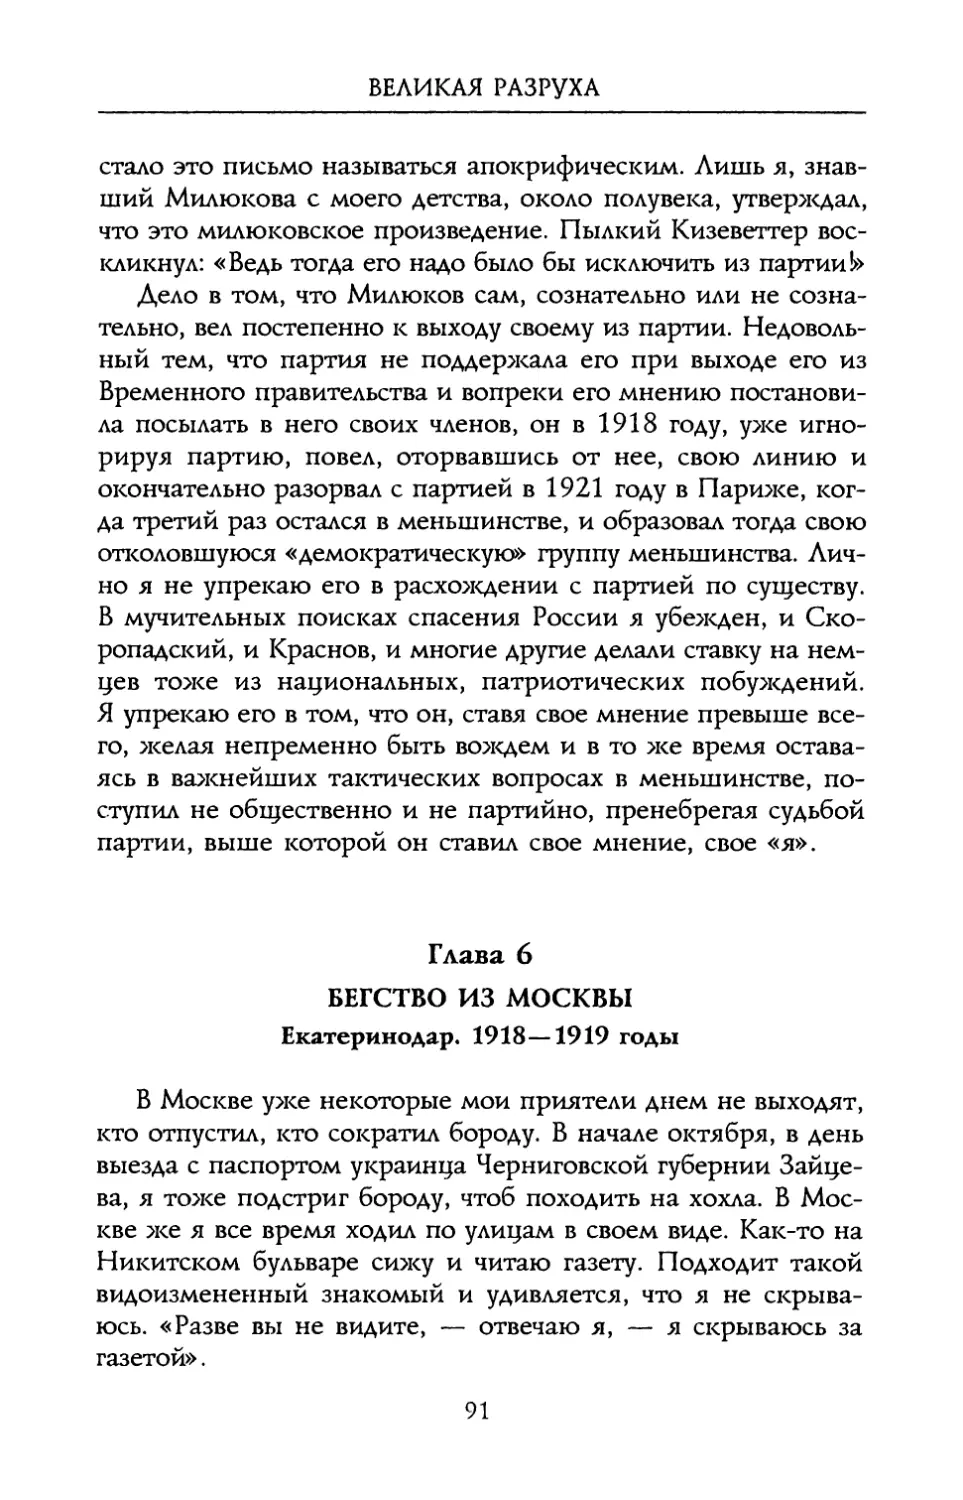 Глава 6. Бегство из Москвы. Екатеринодар. 1918 – 1919 годы